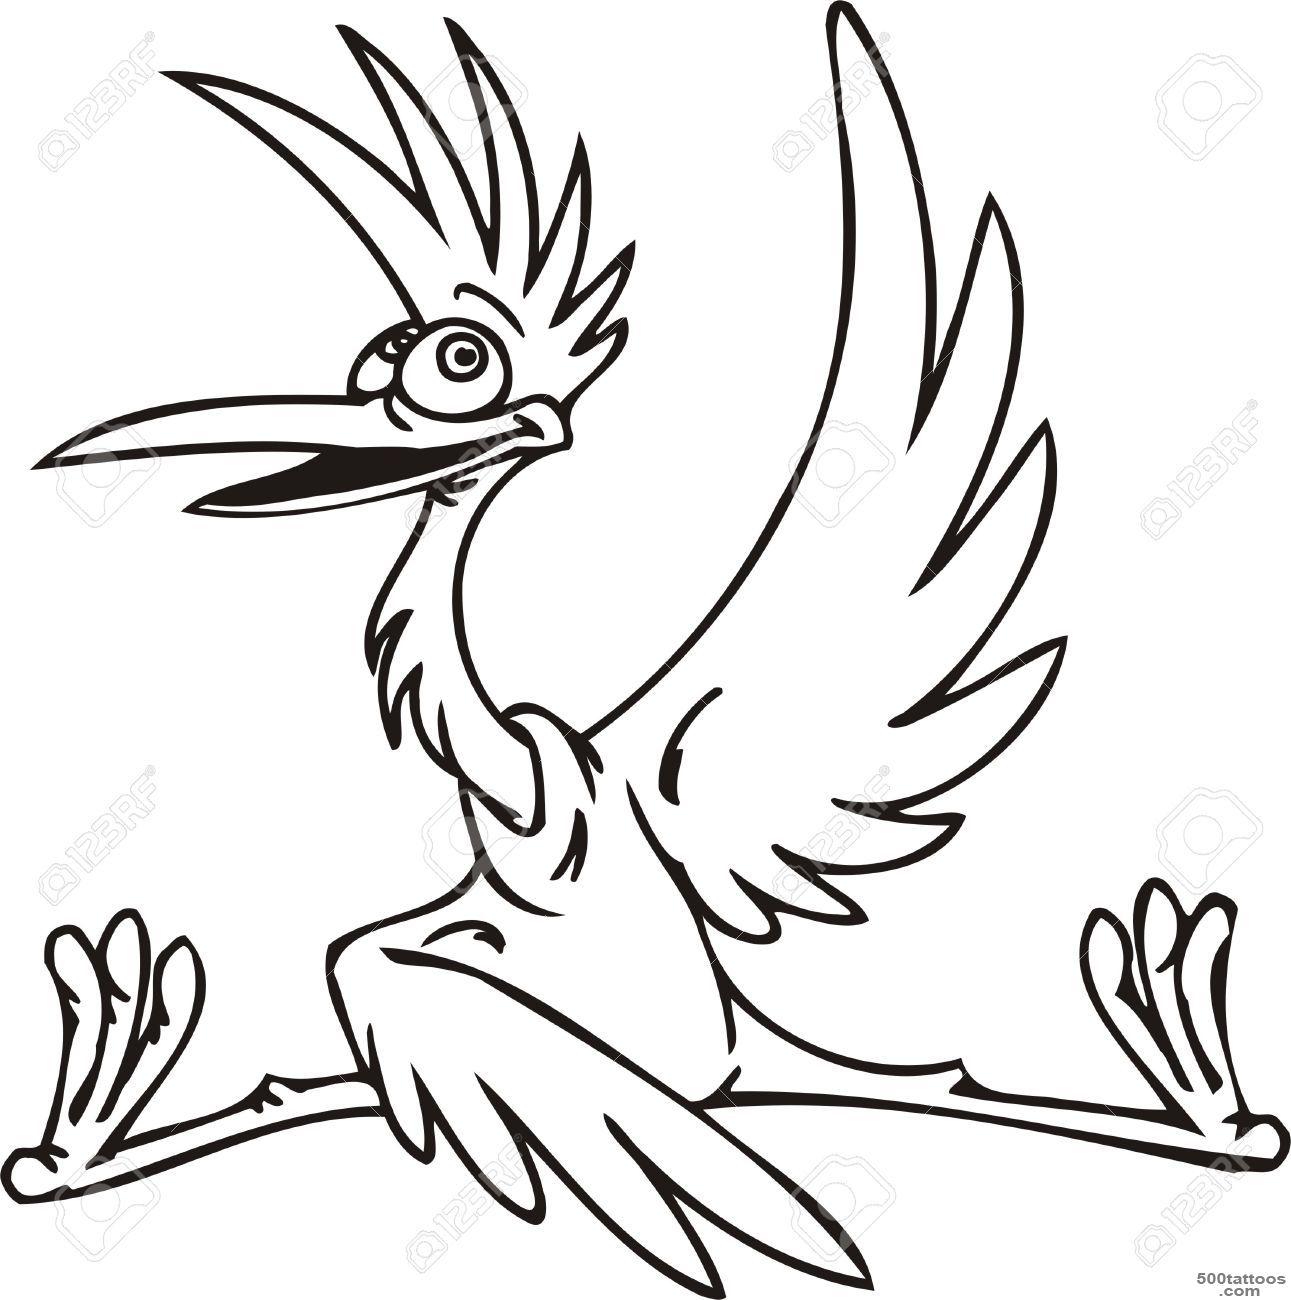 Stork.Funny Birds.Vector Illustration.Vinyl Ready. Royalty Free ..._24